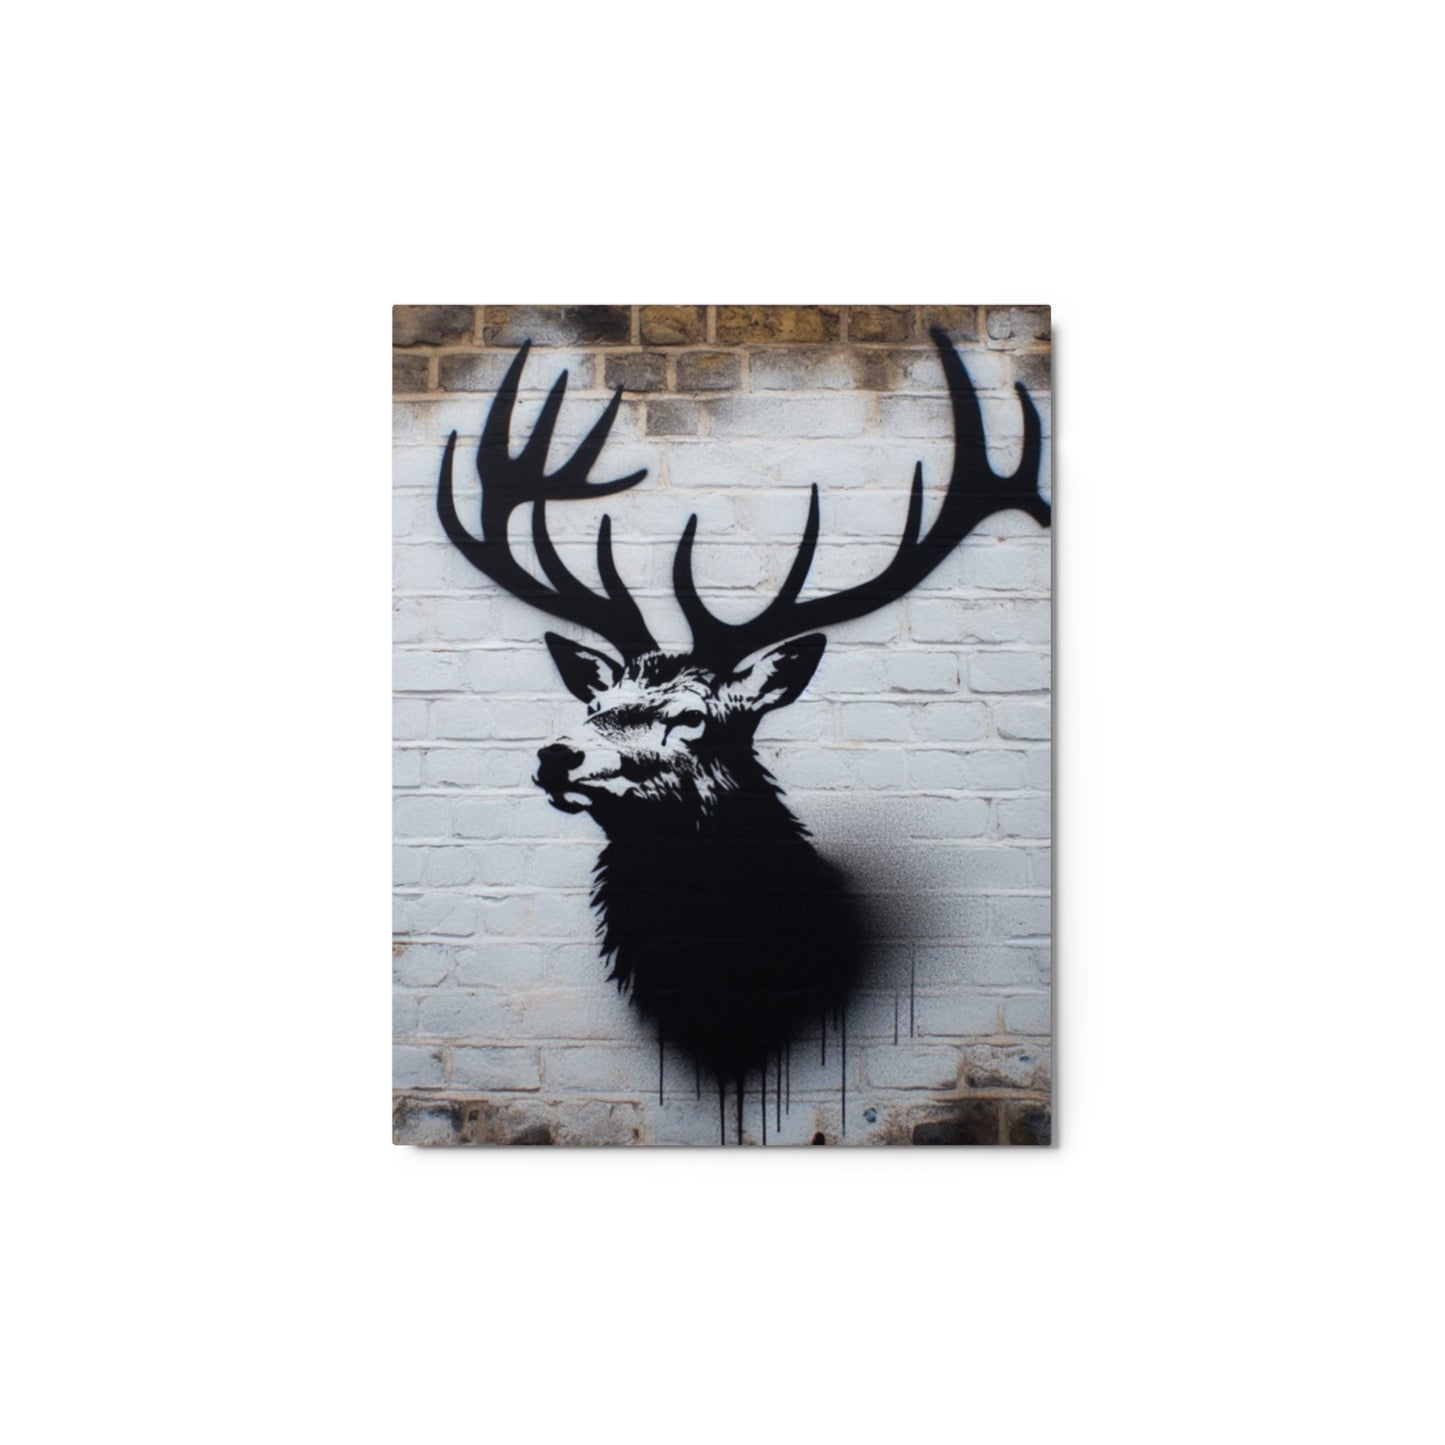 Metal Print 11" x 14" Elk Spraypaint Art on Brick Wall